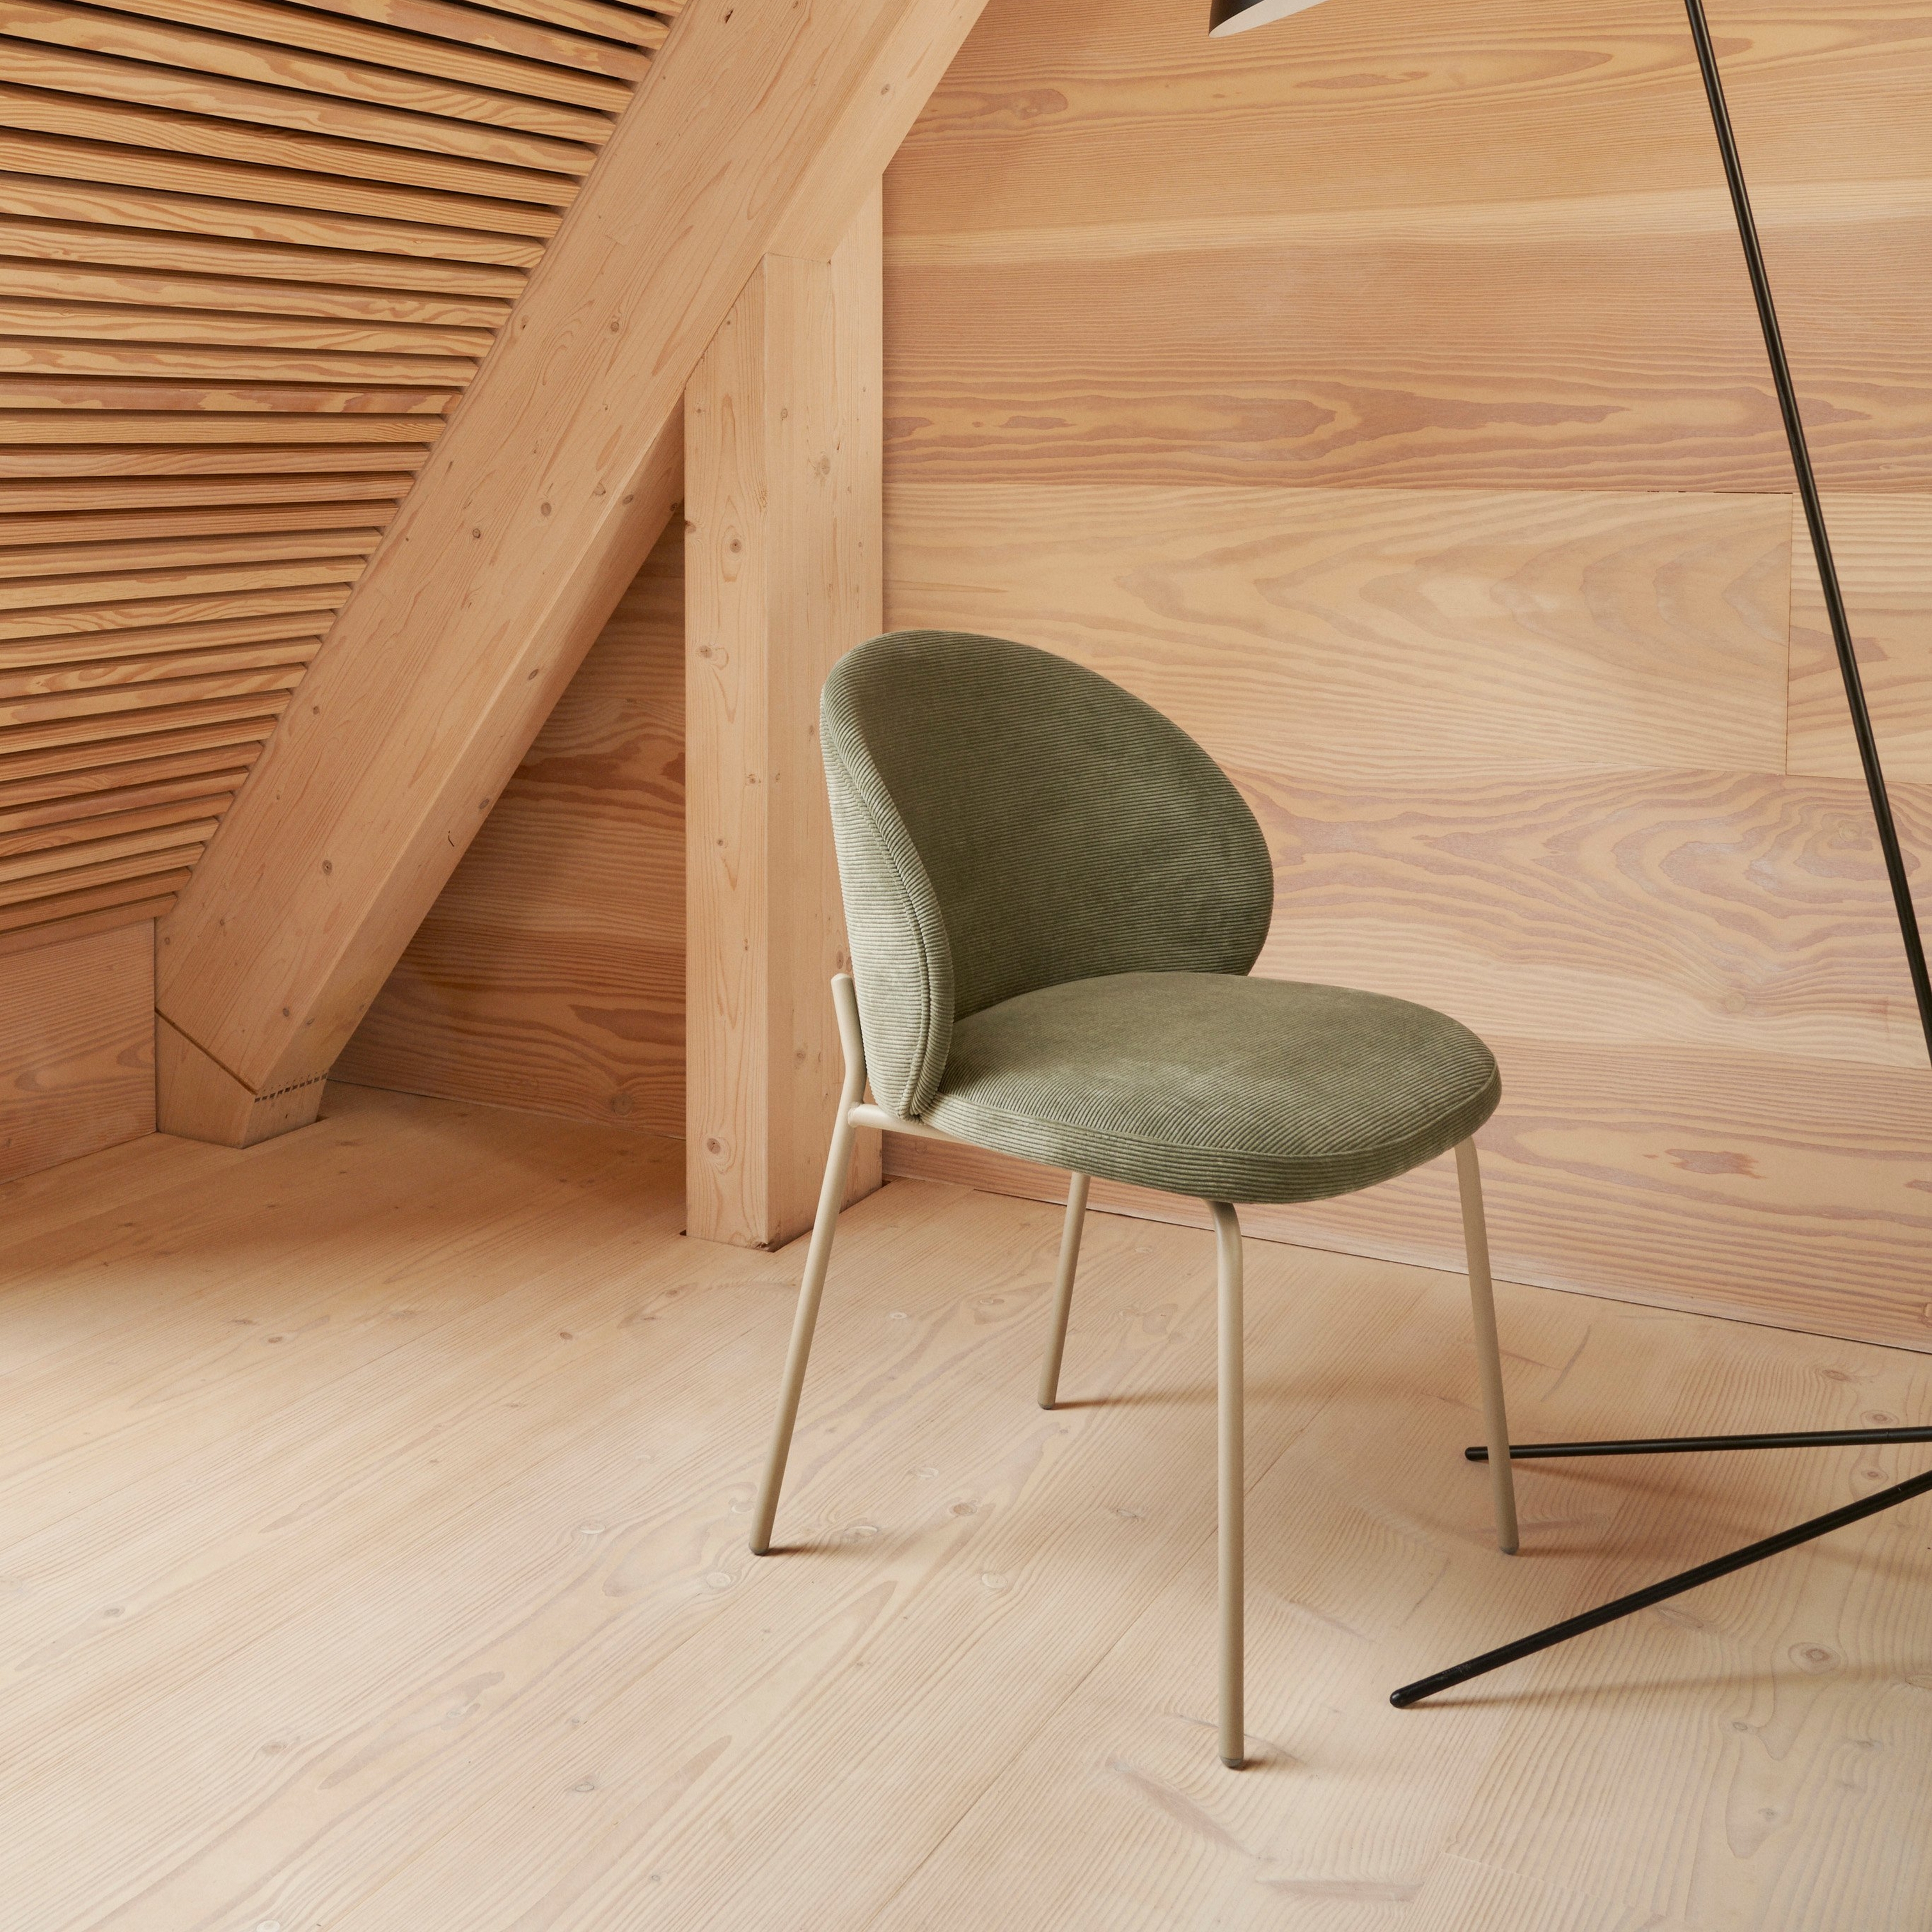 角落中的 Princeton 椅子採用綠色 Bresso 布料襯墊，搭配 Demand 落地燈。